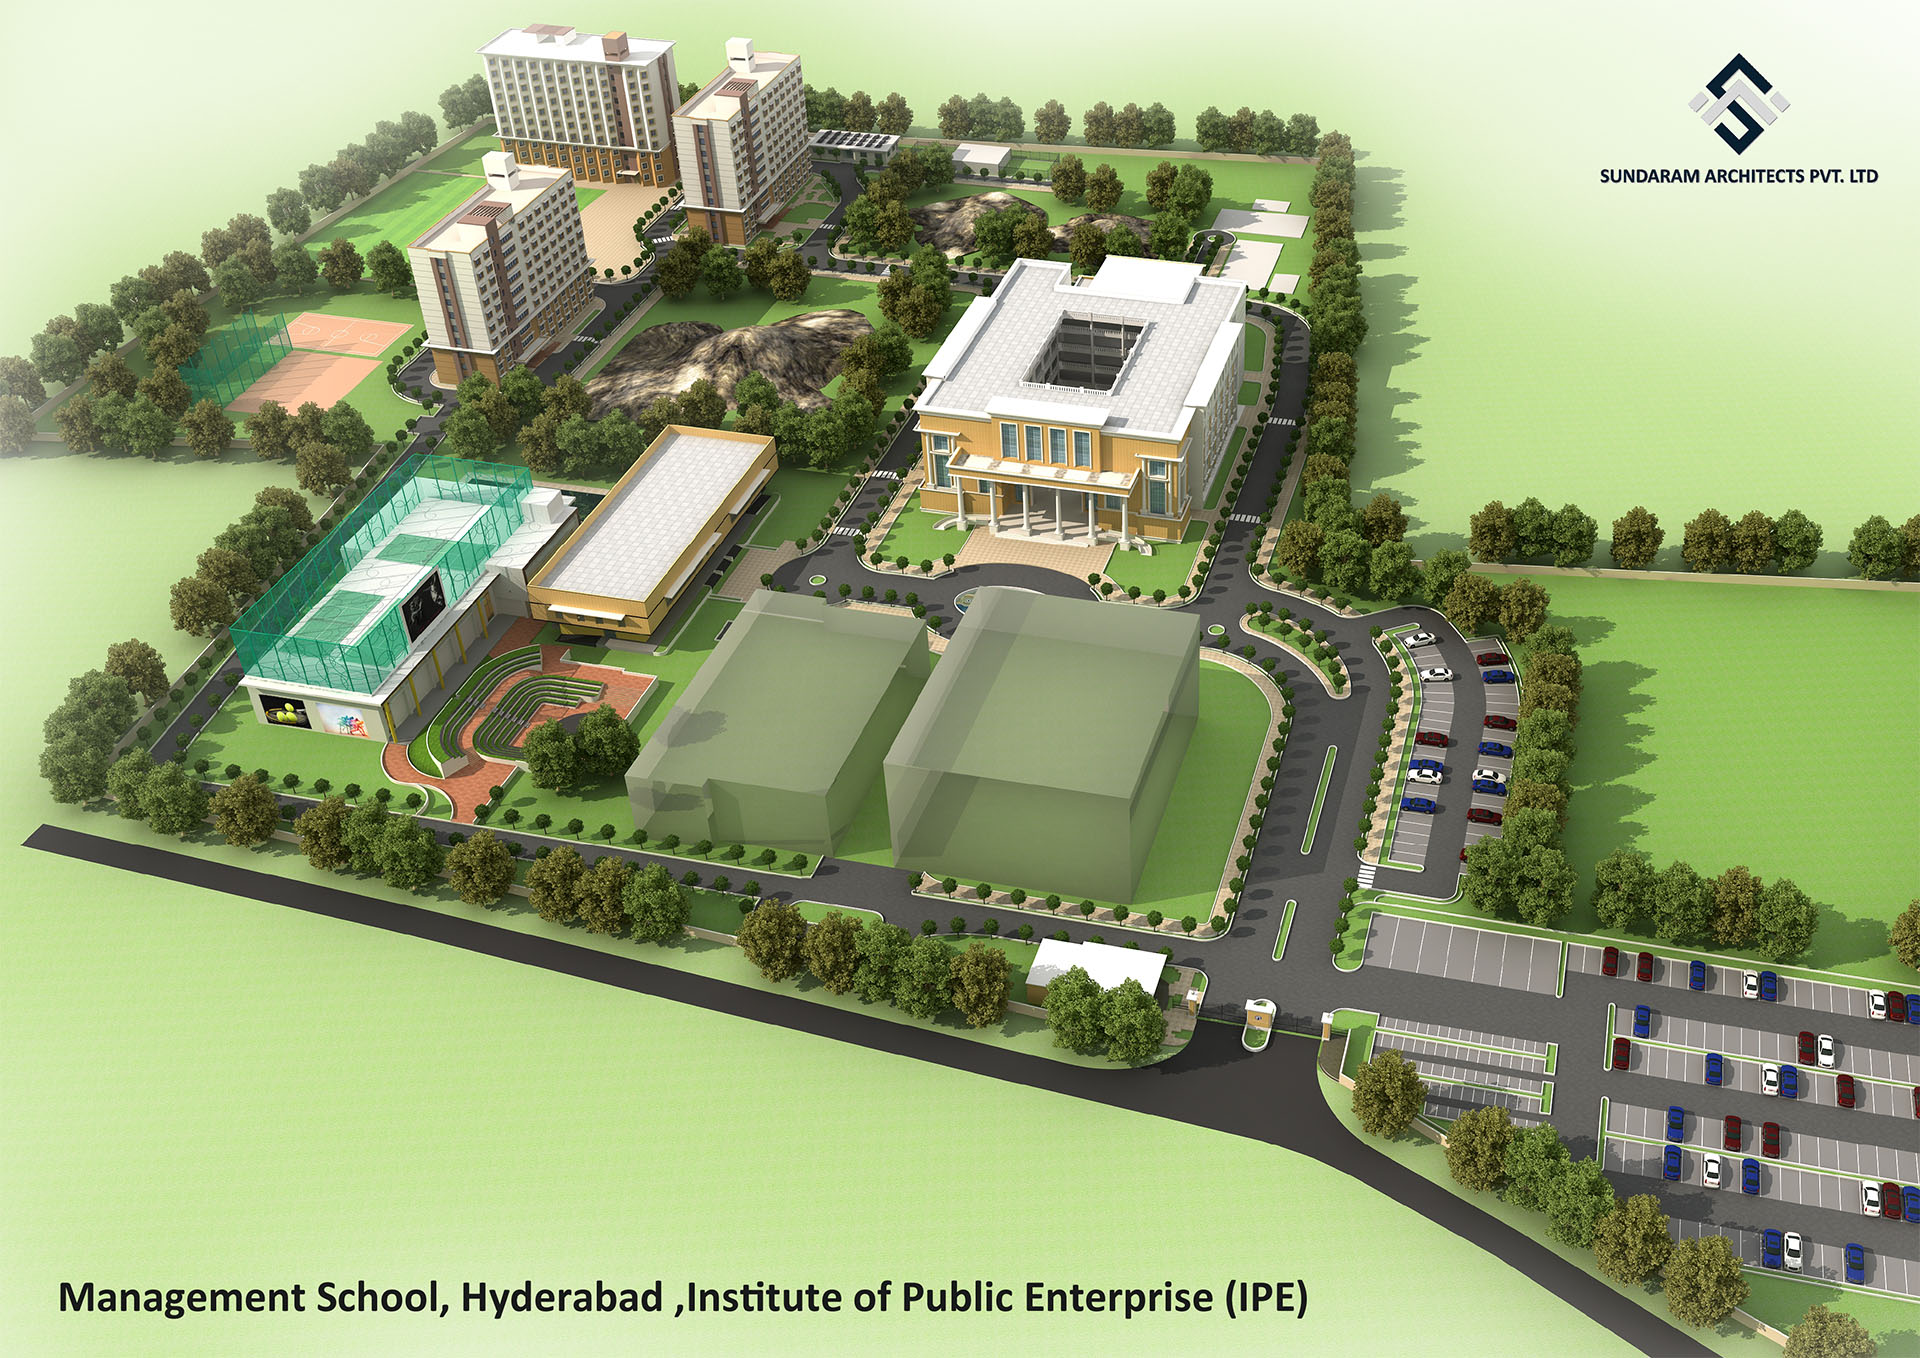 Sundaram Architects designed Management School, Hyderabad, Institute of Public Enterprise (IPE)